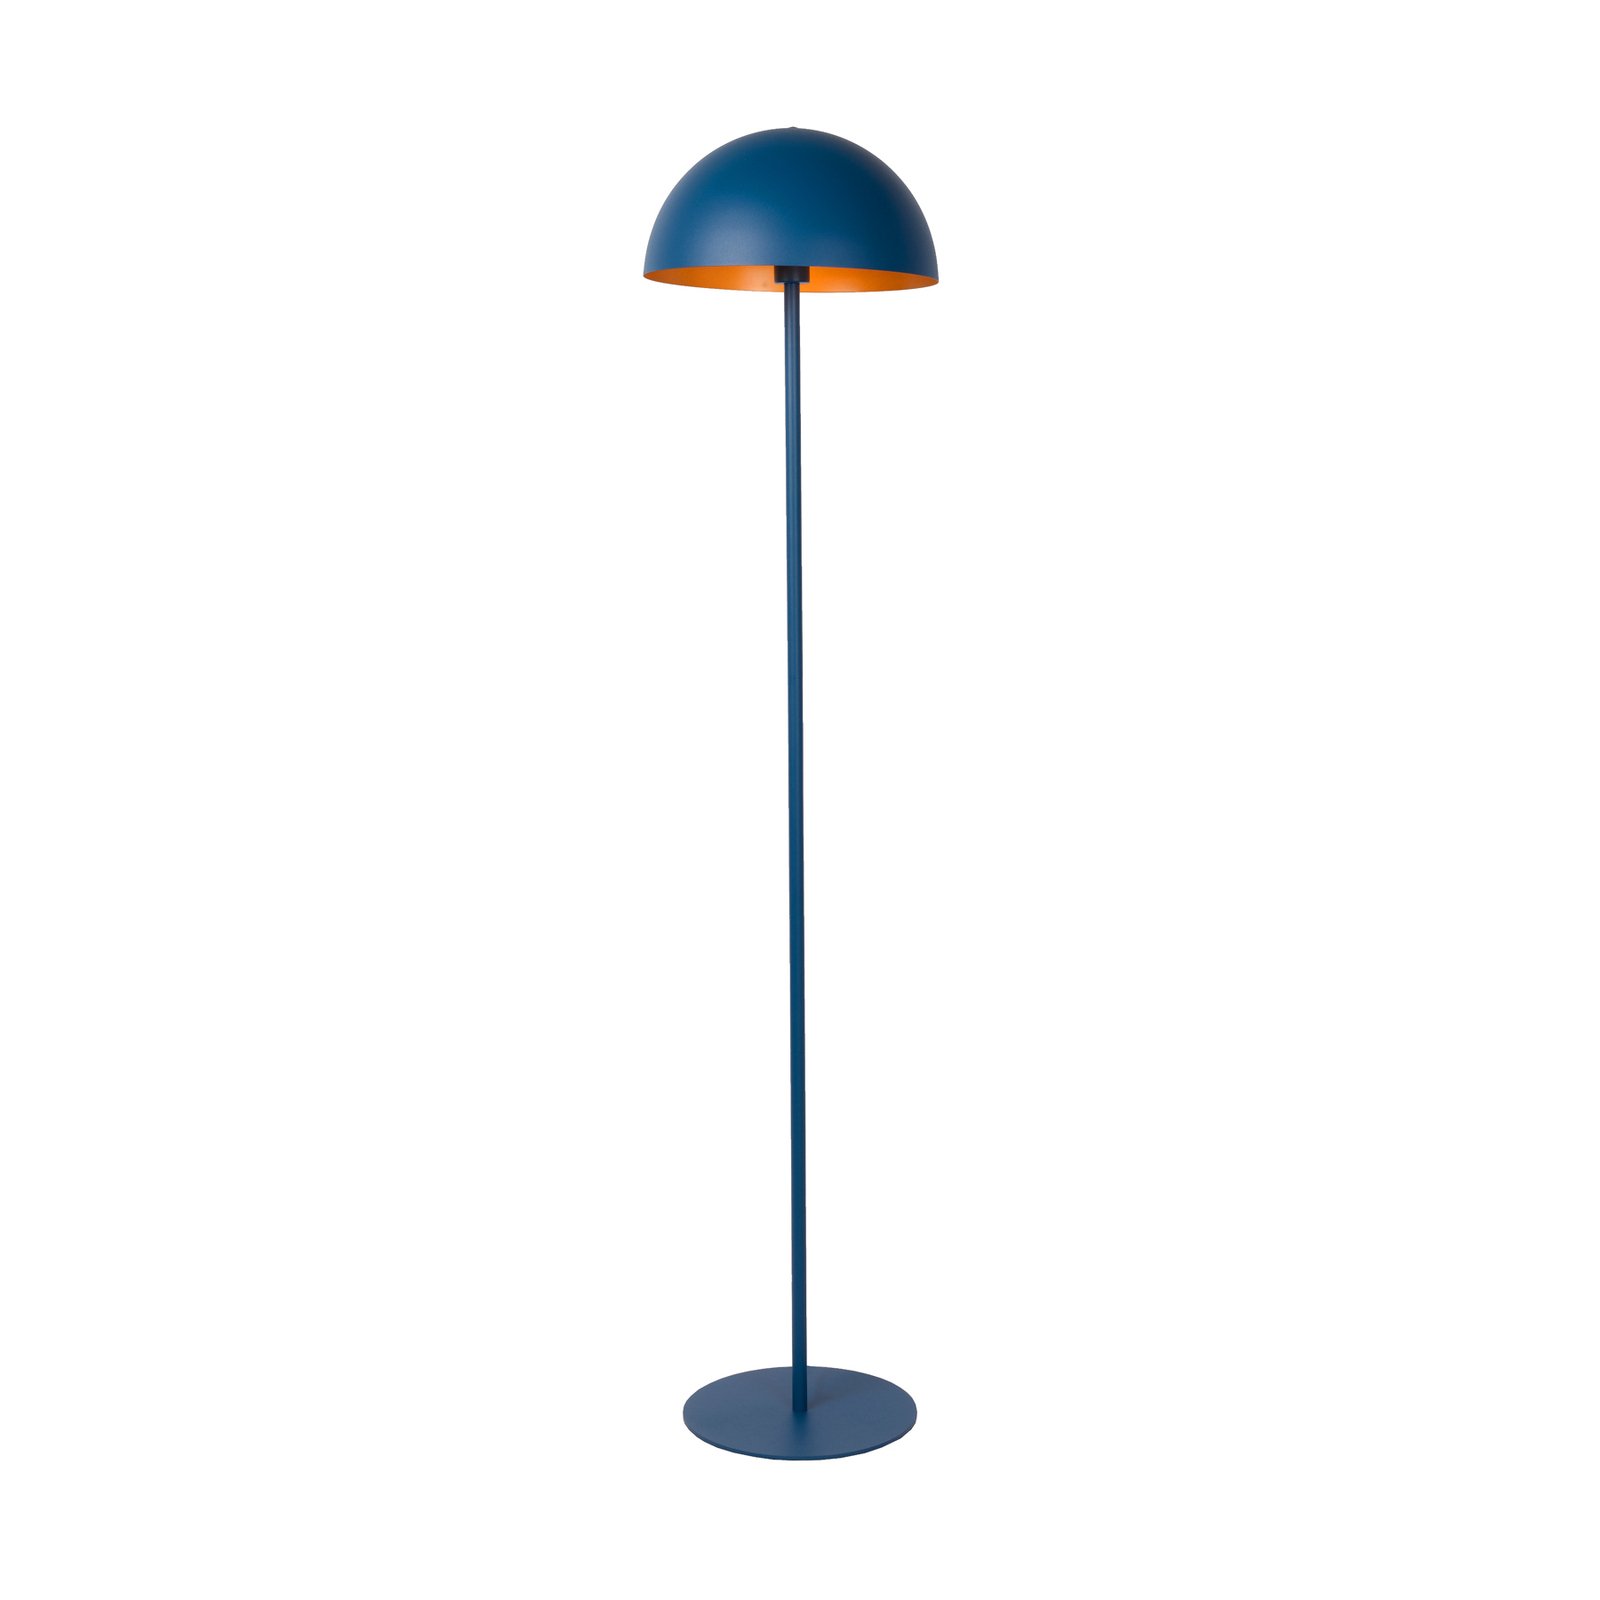 Siemon lampadar din oțel, Ø 35cm, albastru